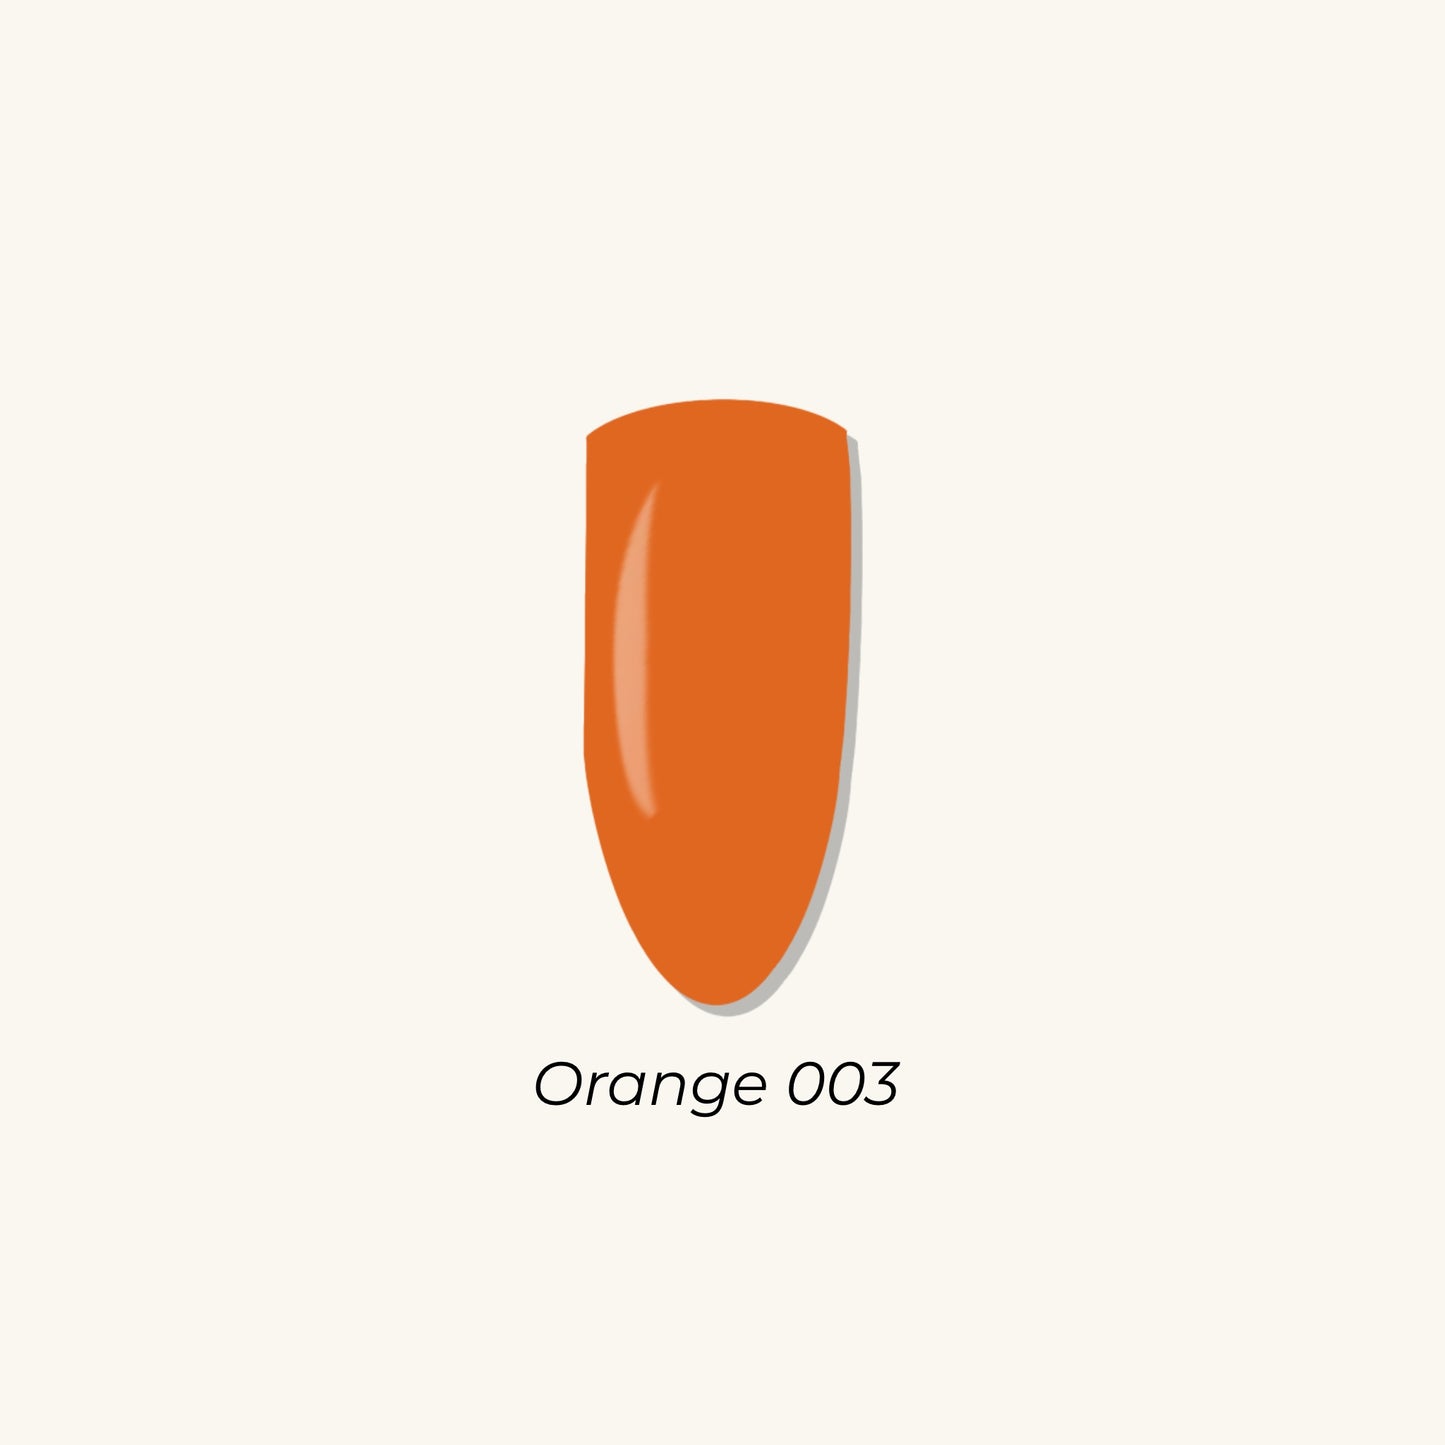 Orange 003